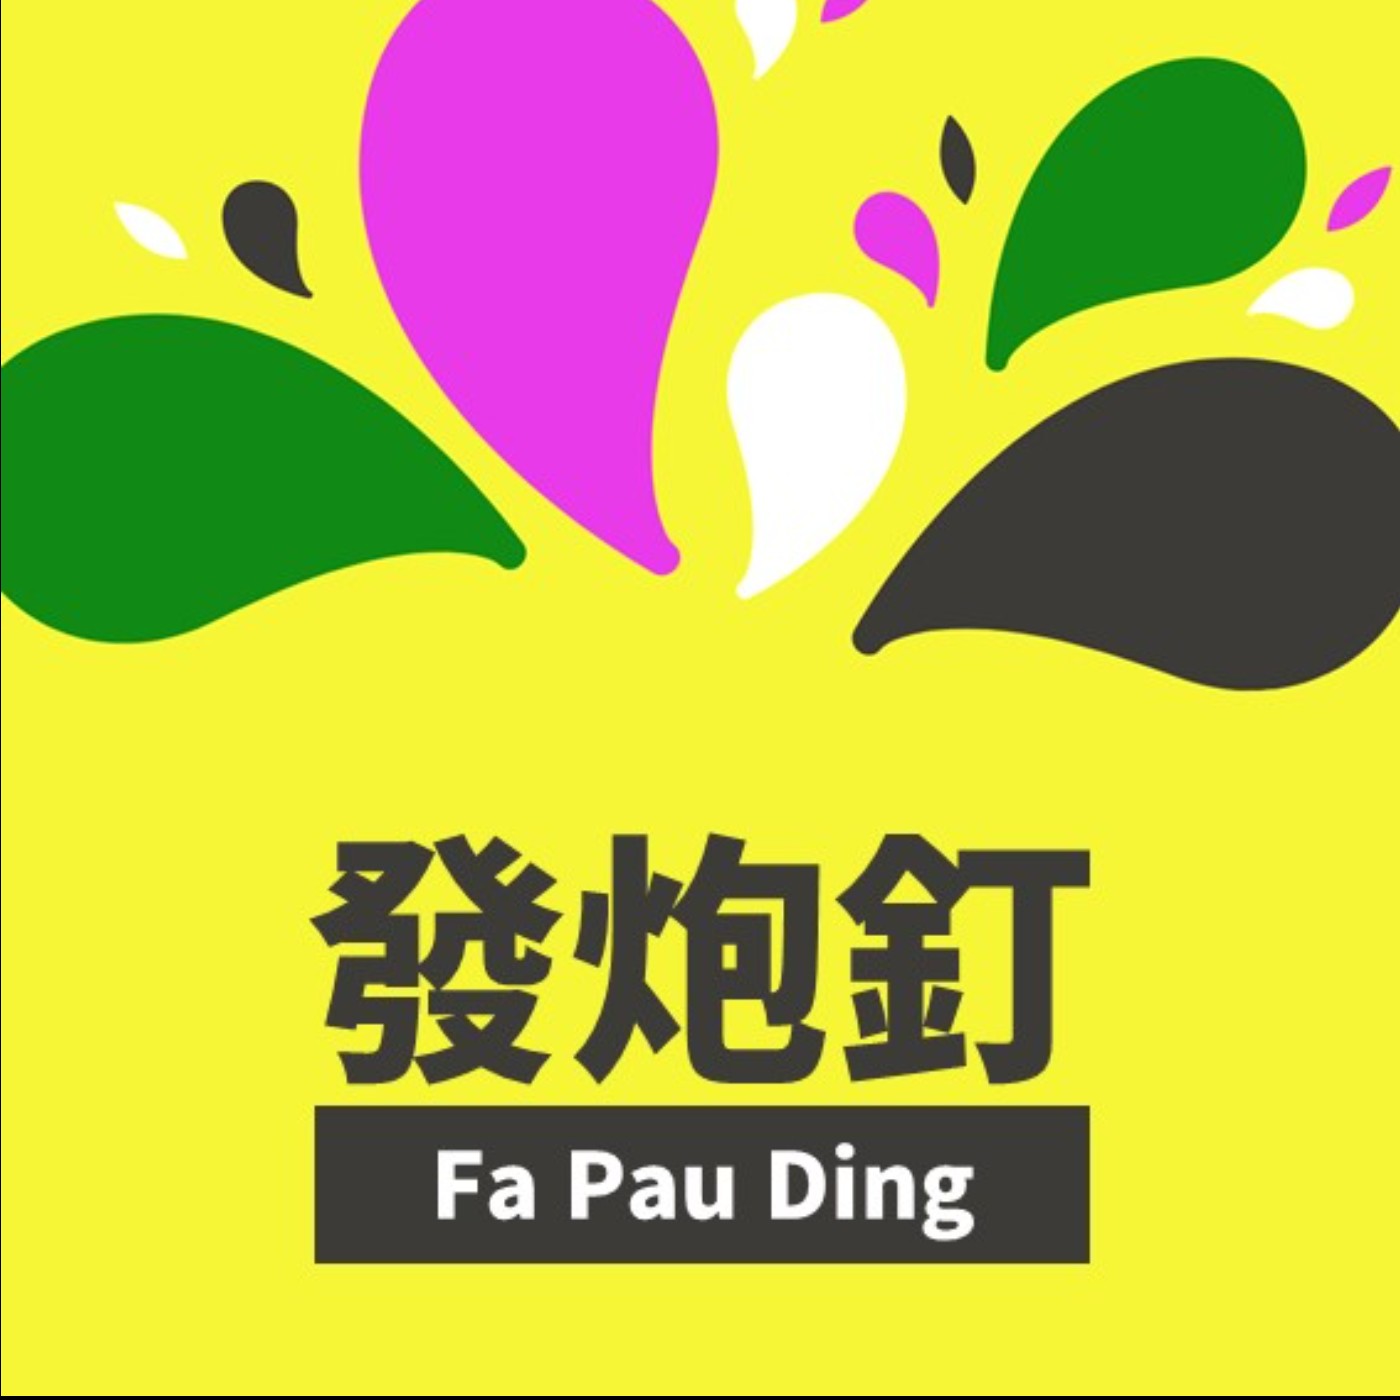 發炮釘 Fa Pau Ding